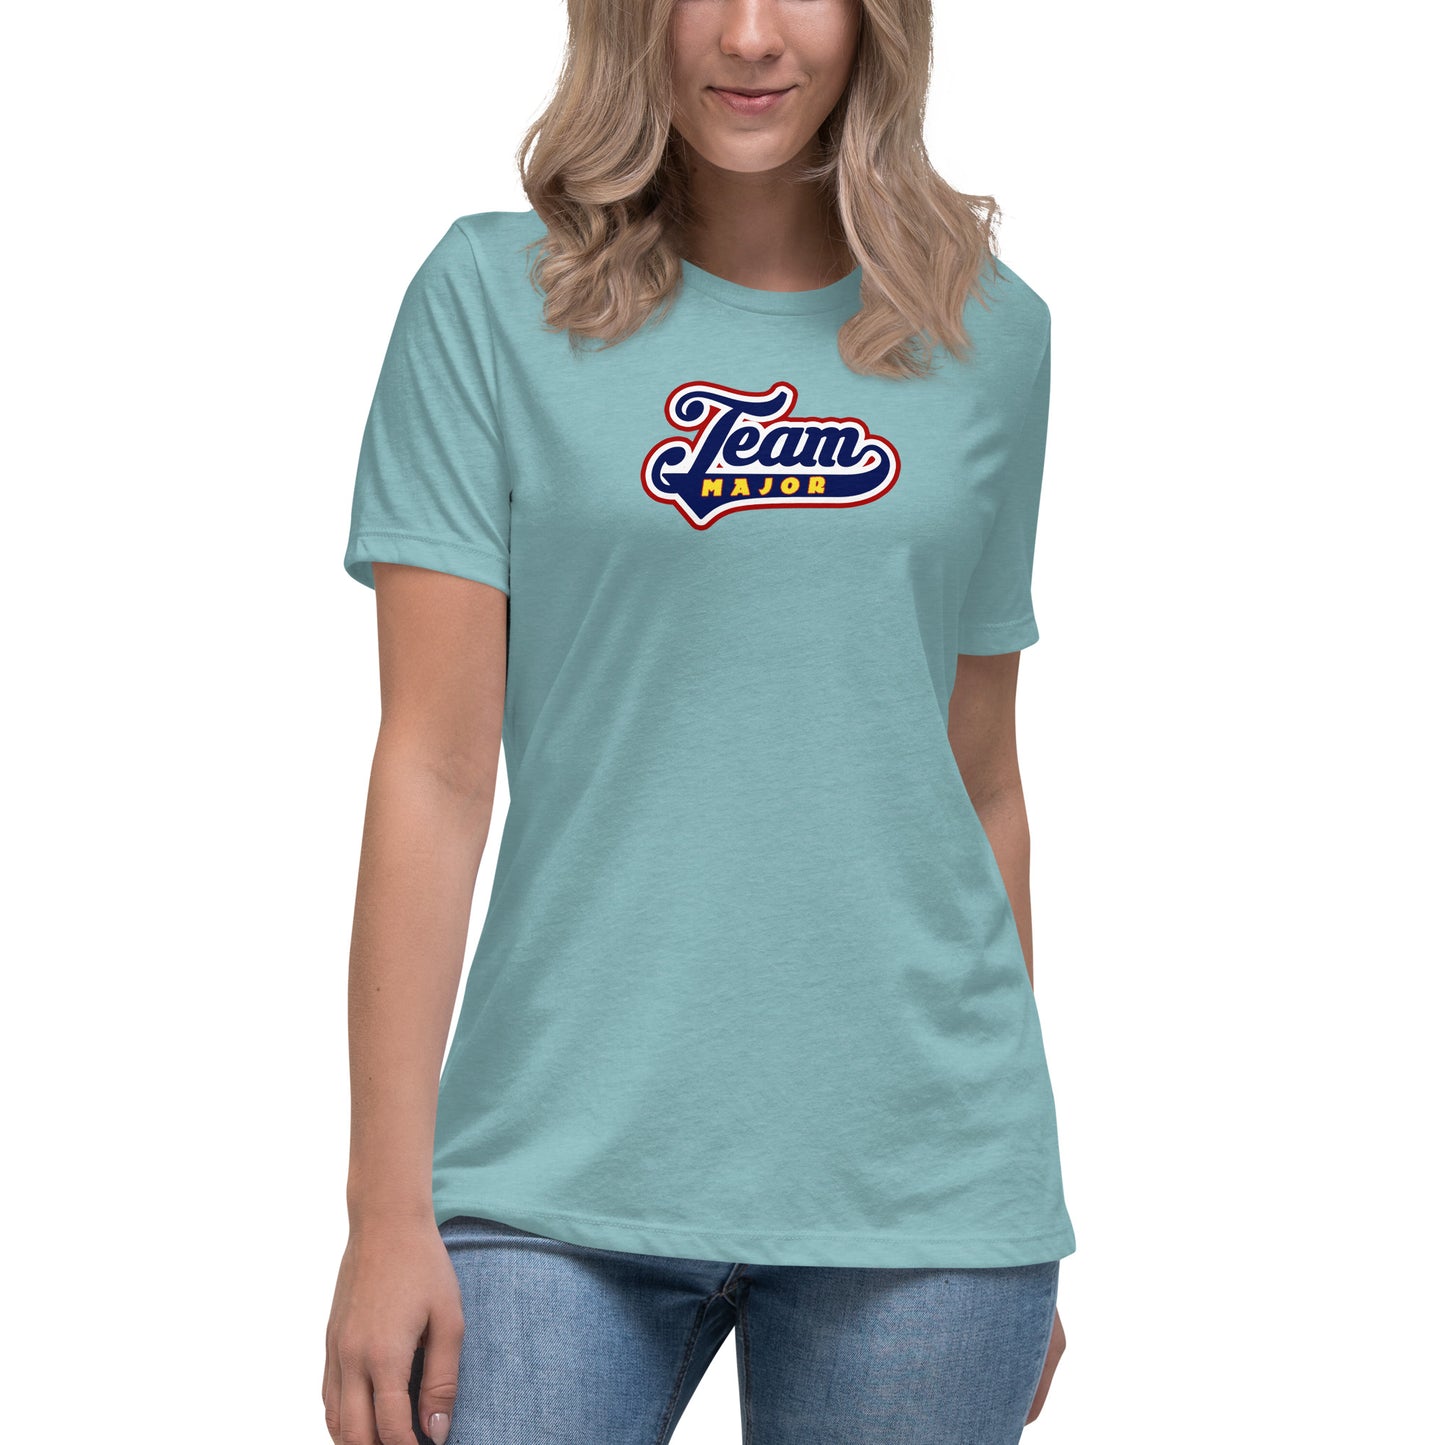 Team Major Women's T-Shirt